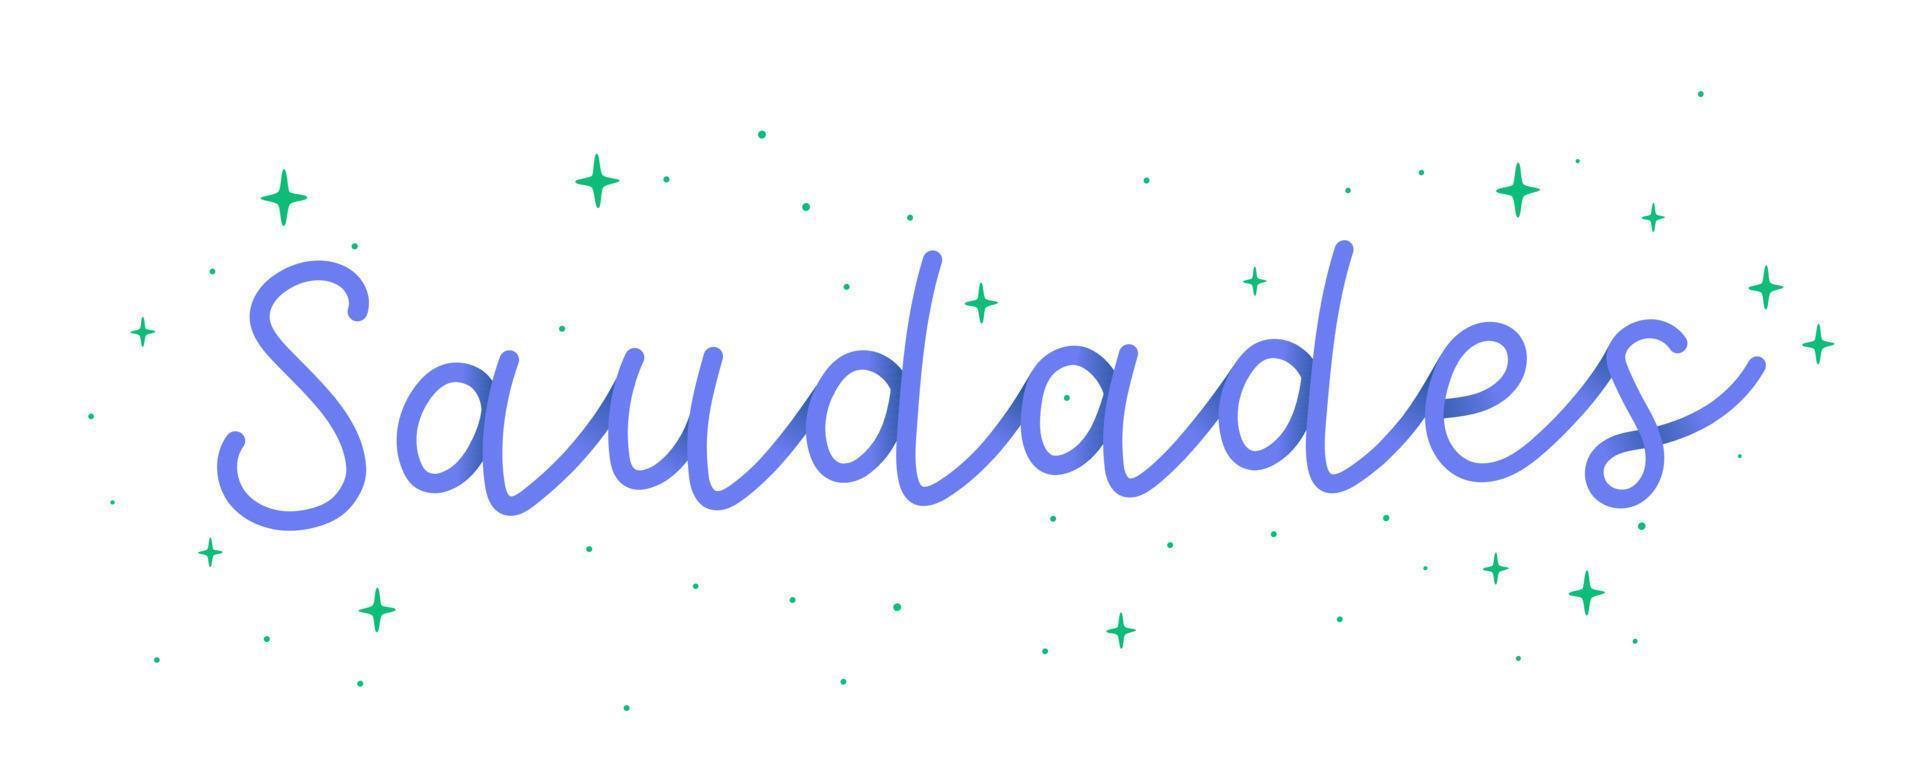 palabra cursiva a mano azul claro te extraño en portugués brasileño con estrellas. traducción - te extraño. vector